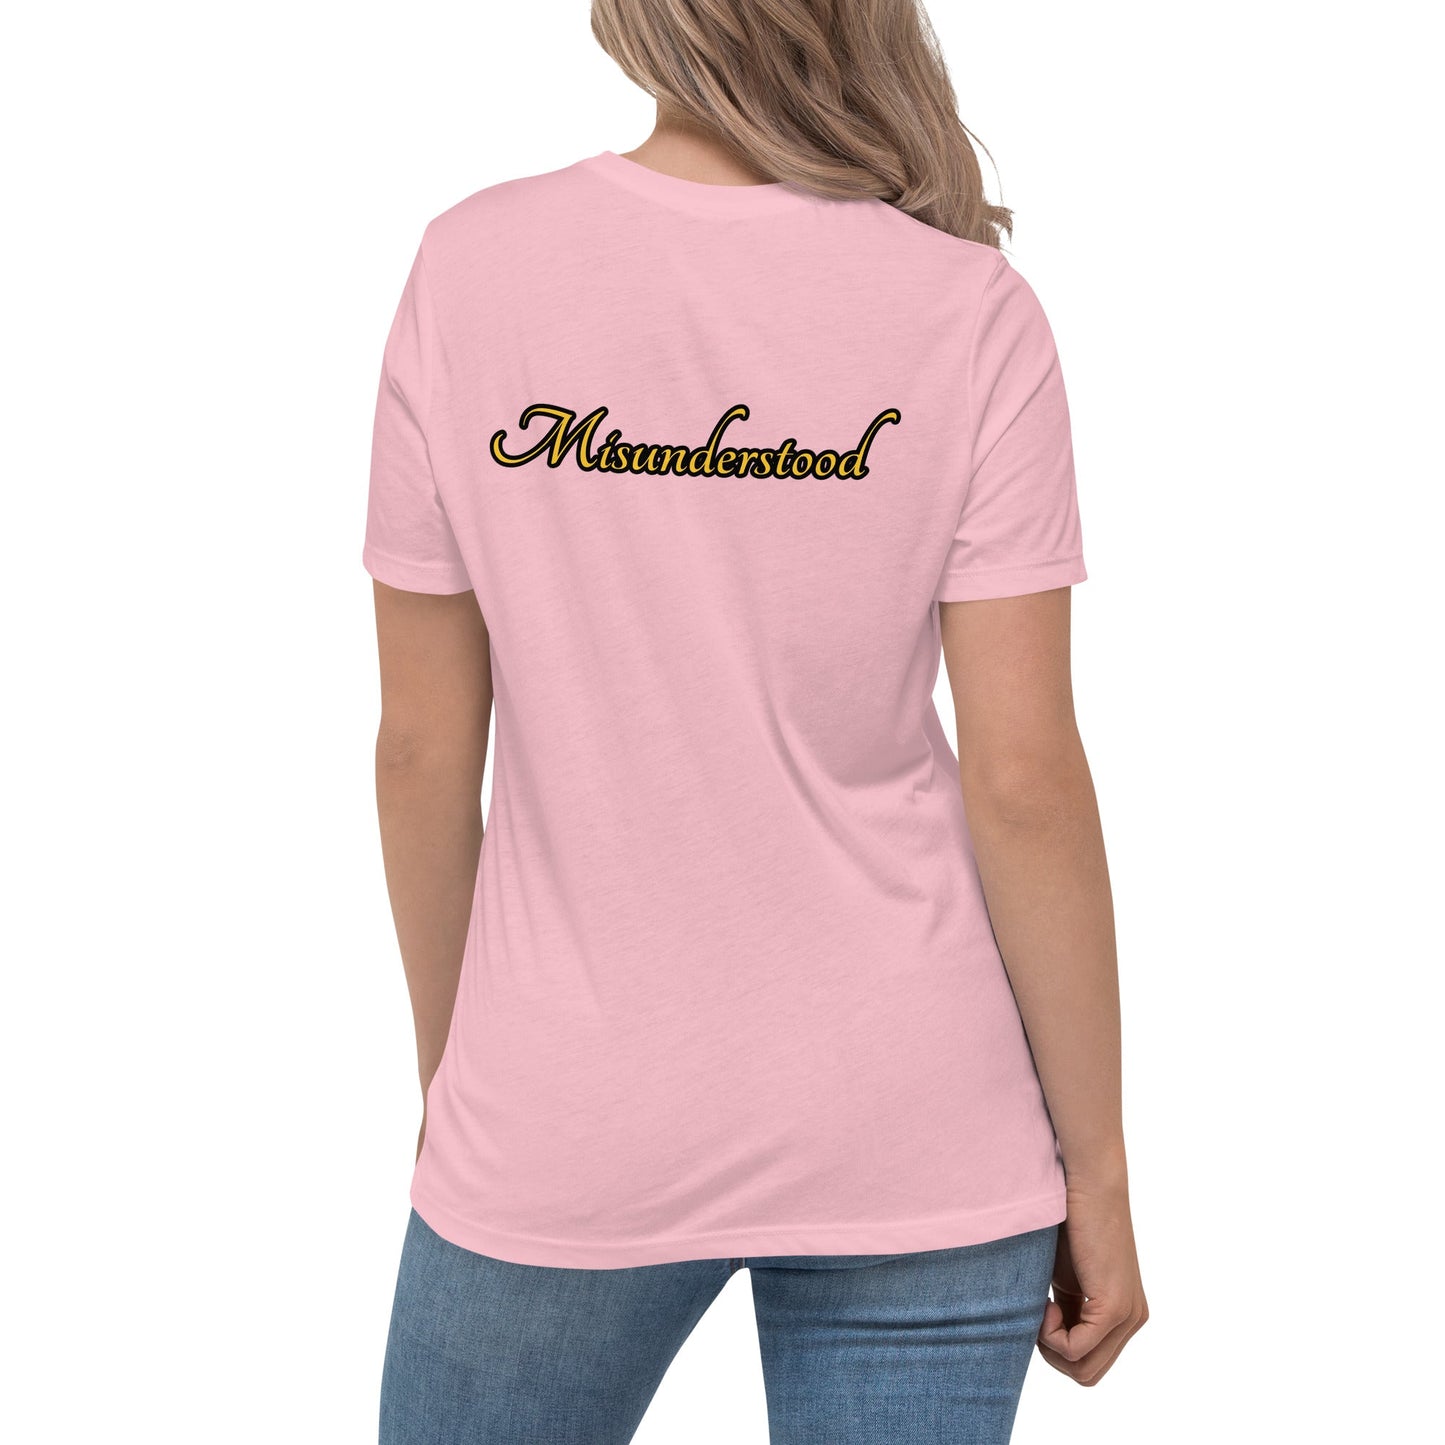 Misunderstood Women's Relaxed T-Shirt - Weirdly Sensational